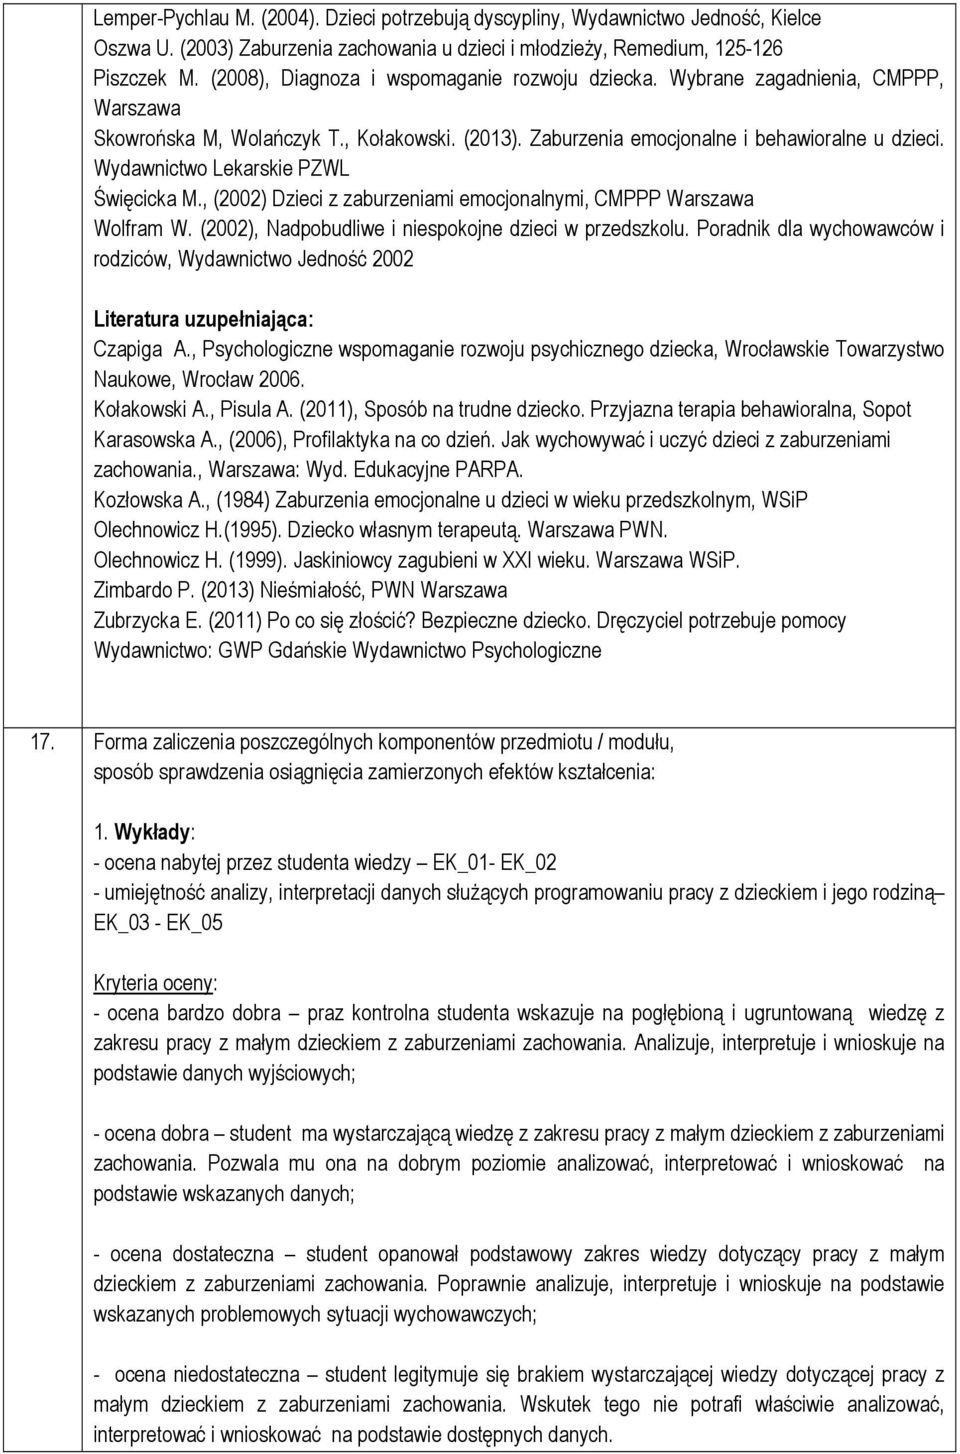 Wydawnictwo Lekarskie PZWL Święcicka M., (02) Dzieci z zaburzeniami emocjonalnymi, CMPPP Warszawa Wolfram W. (02), Nadpobudliwe i niespokojne dzieci w przedszkolu.